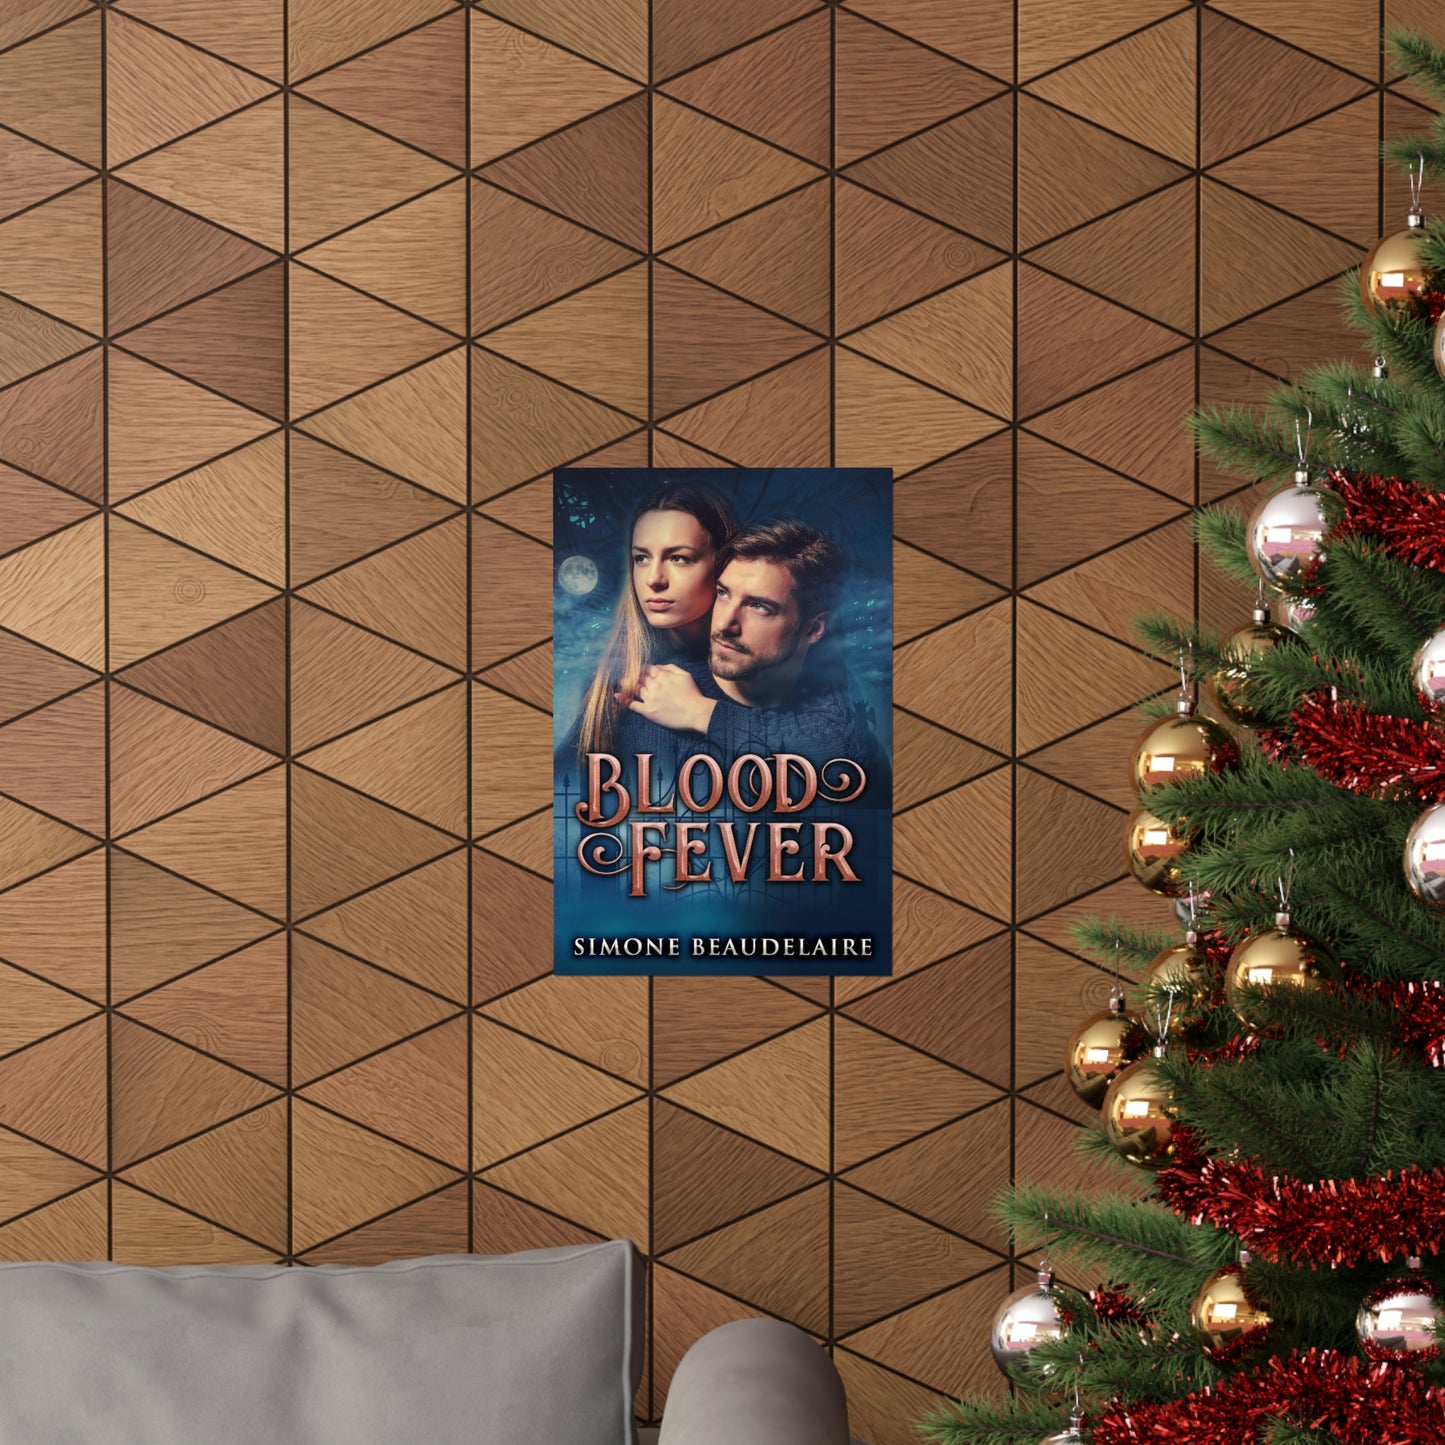 Blood Fever - Matte Poster